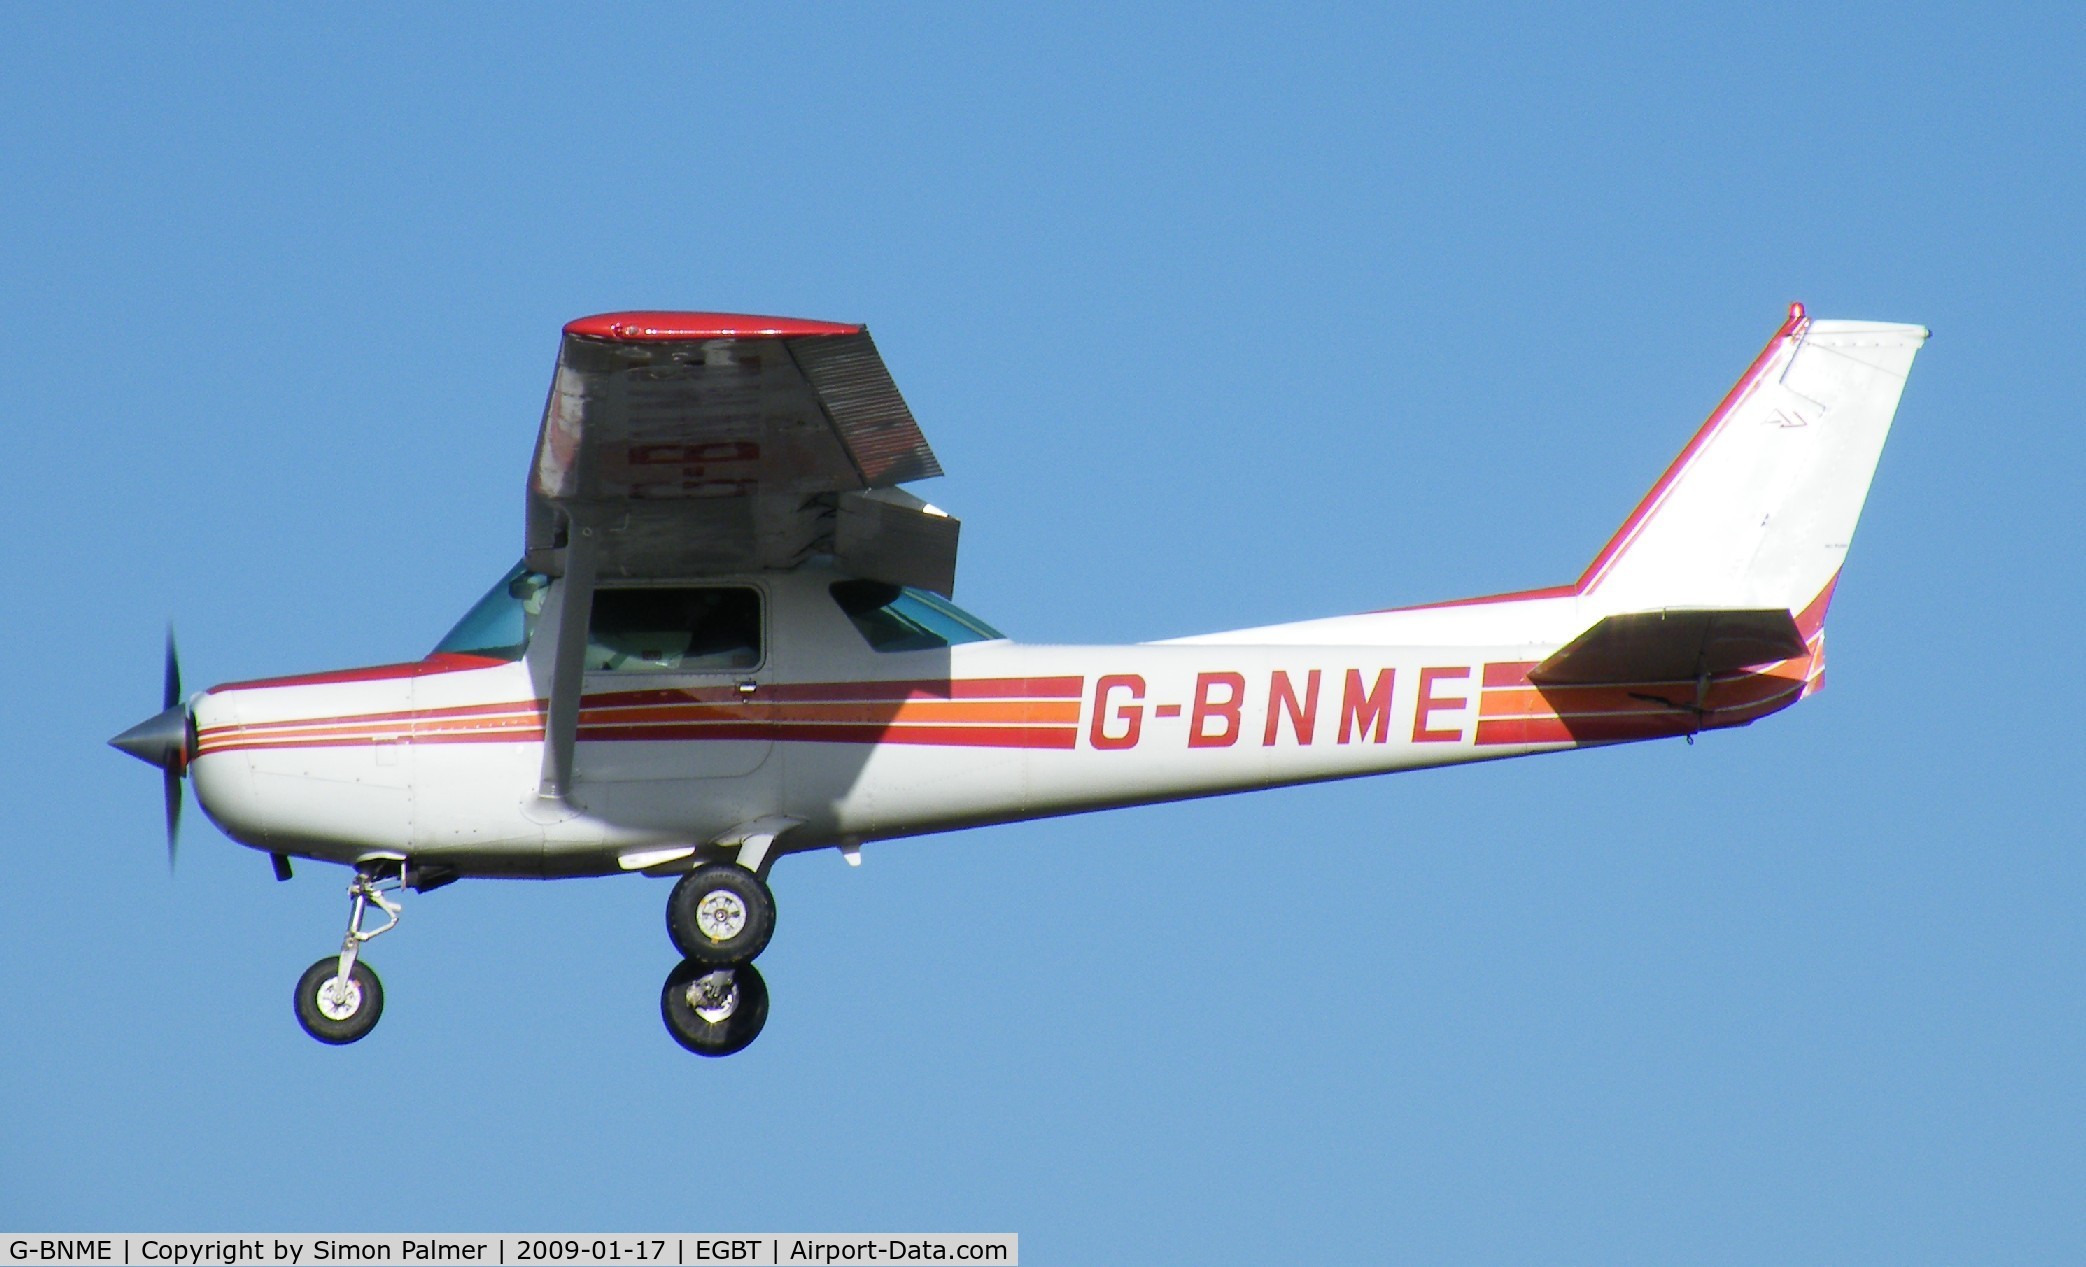 G-BNME, 1981 Cessna 152 C/N 152-84888, Cessna 152 landing at Turweston